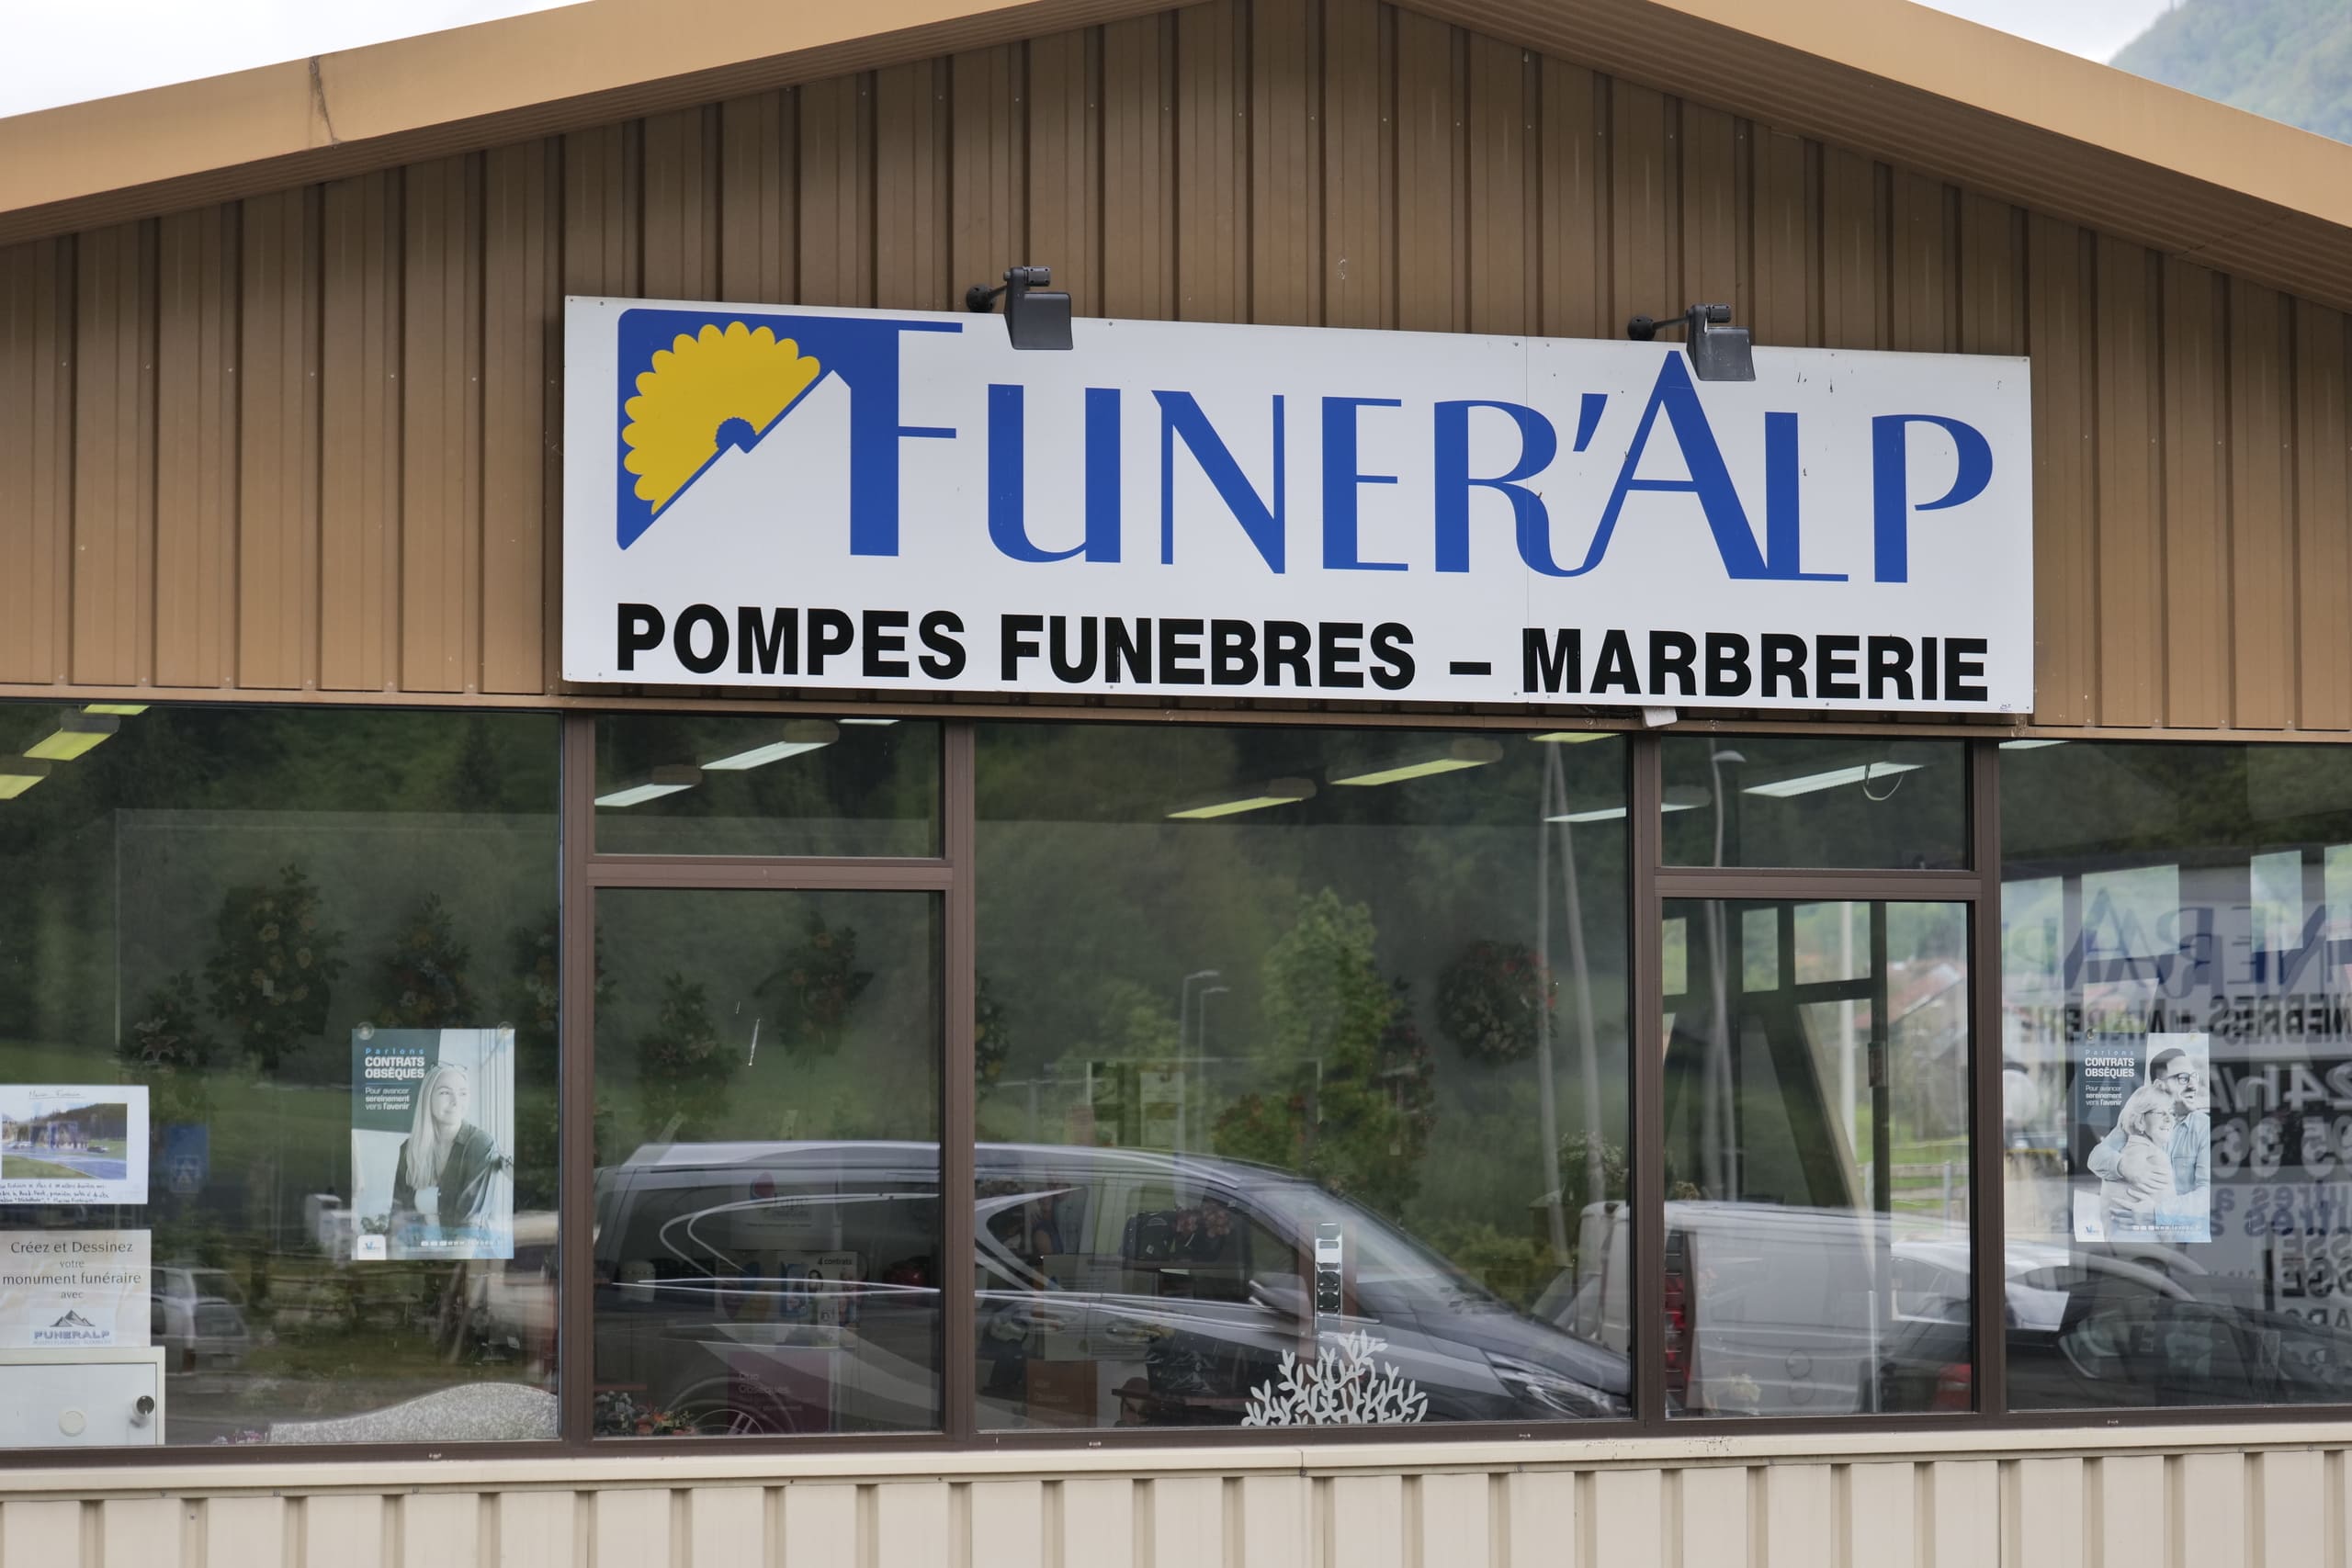 Photo - Pompes Funebres - Marbrerie Funeralp - Saint-Jeoire